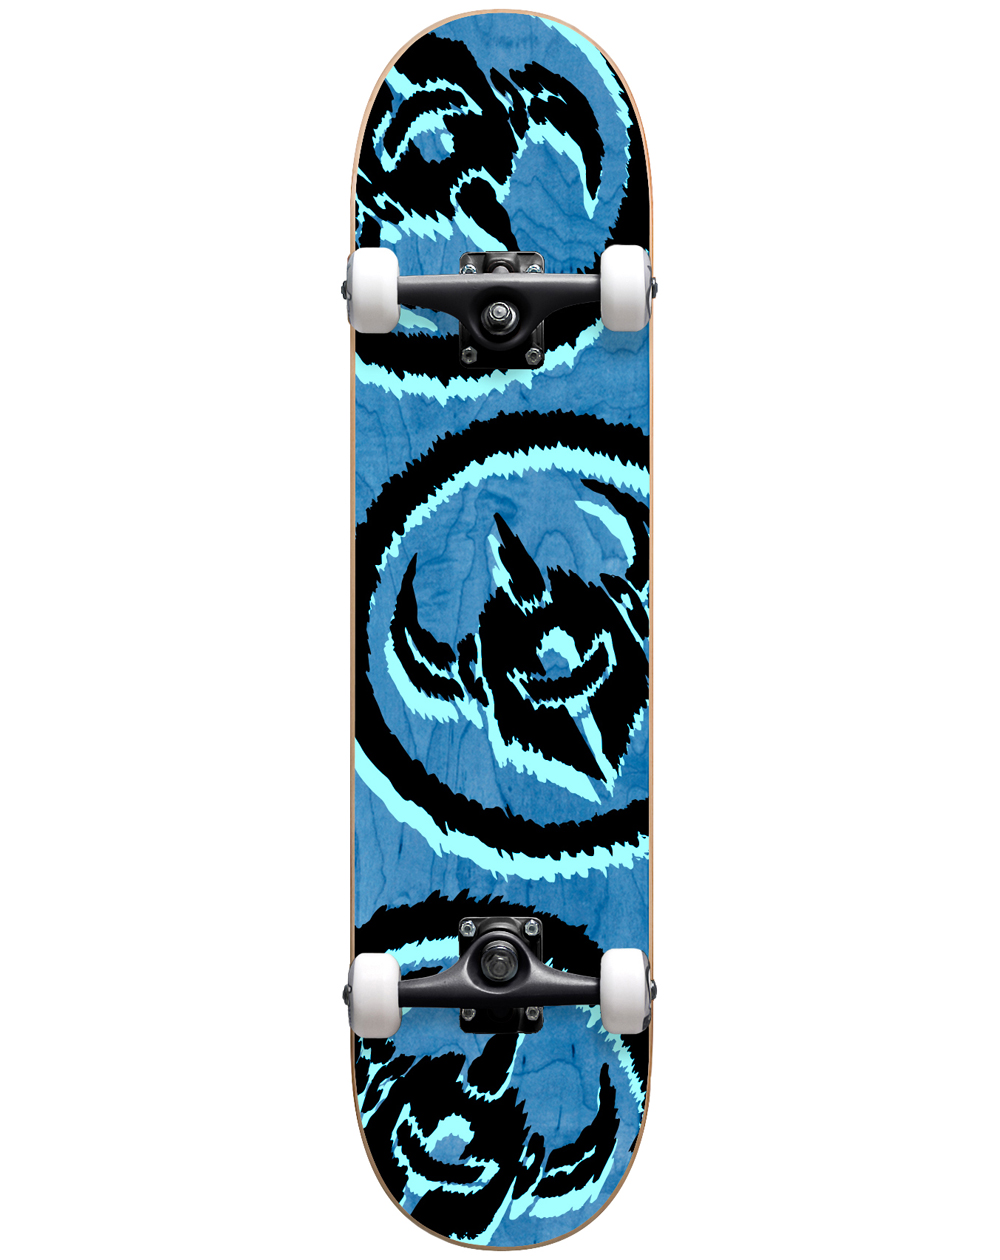 Darkstar Dissent 7.875" Complete Skateboard Blue